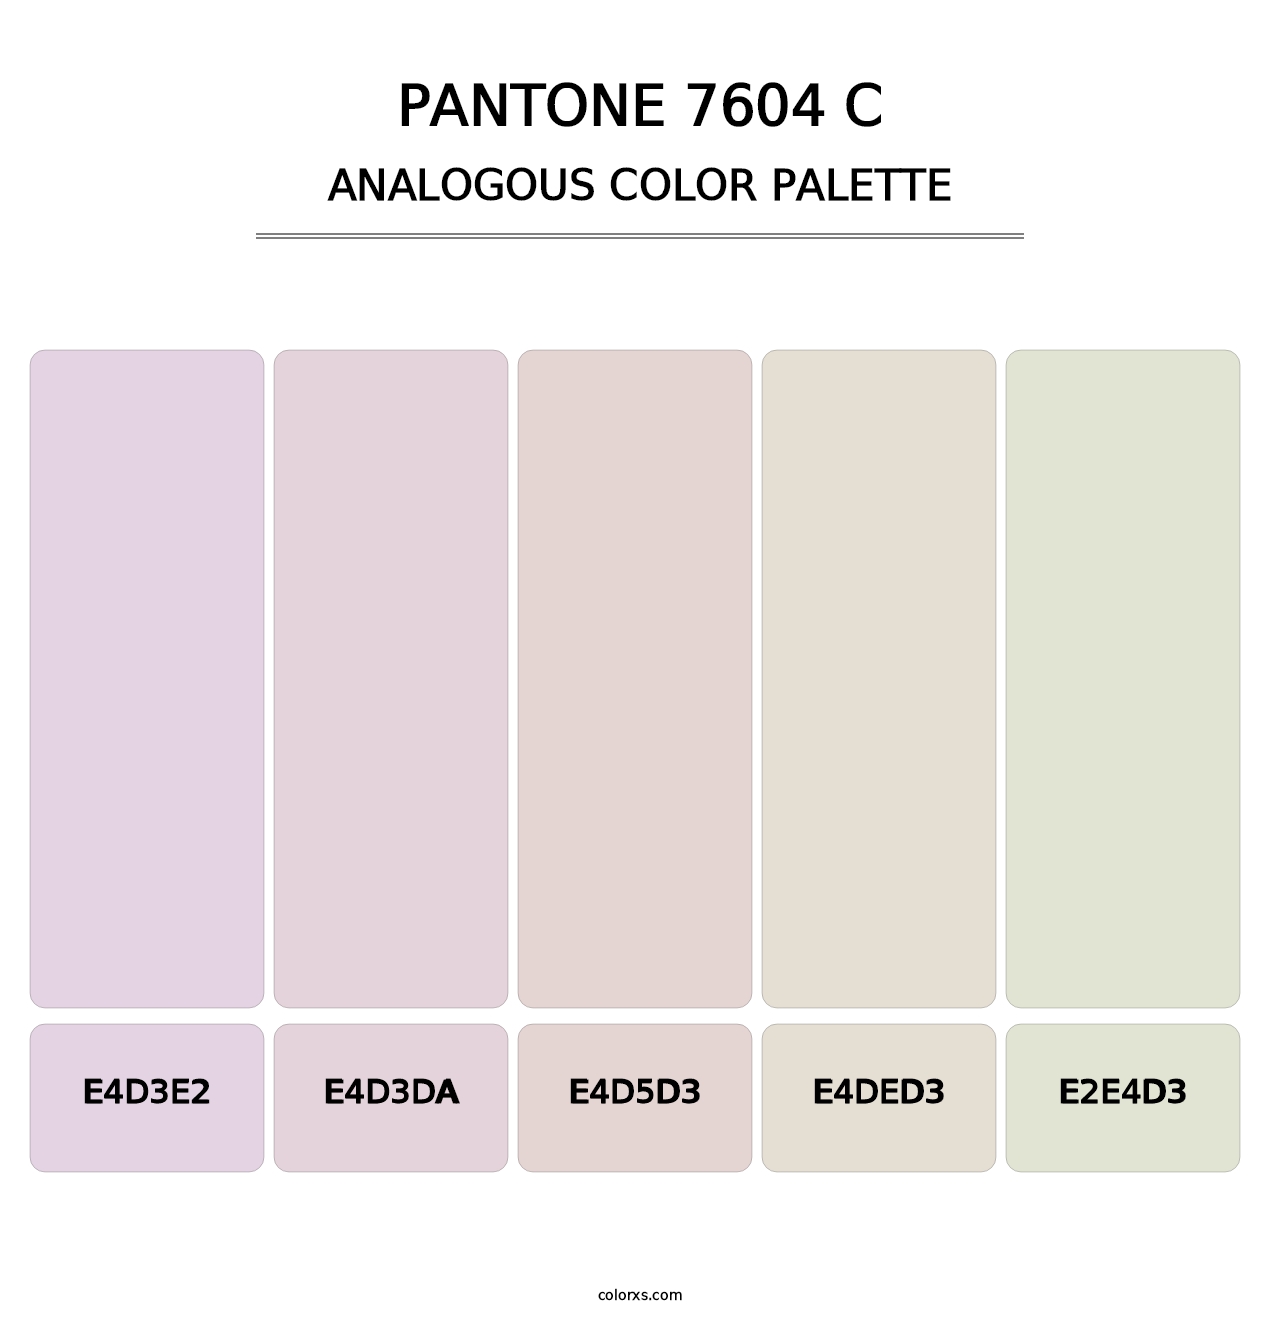 PANTONE 7604 C - Analogous Color Palette